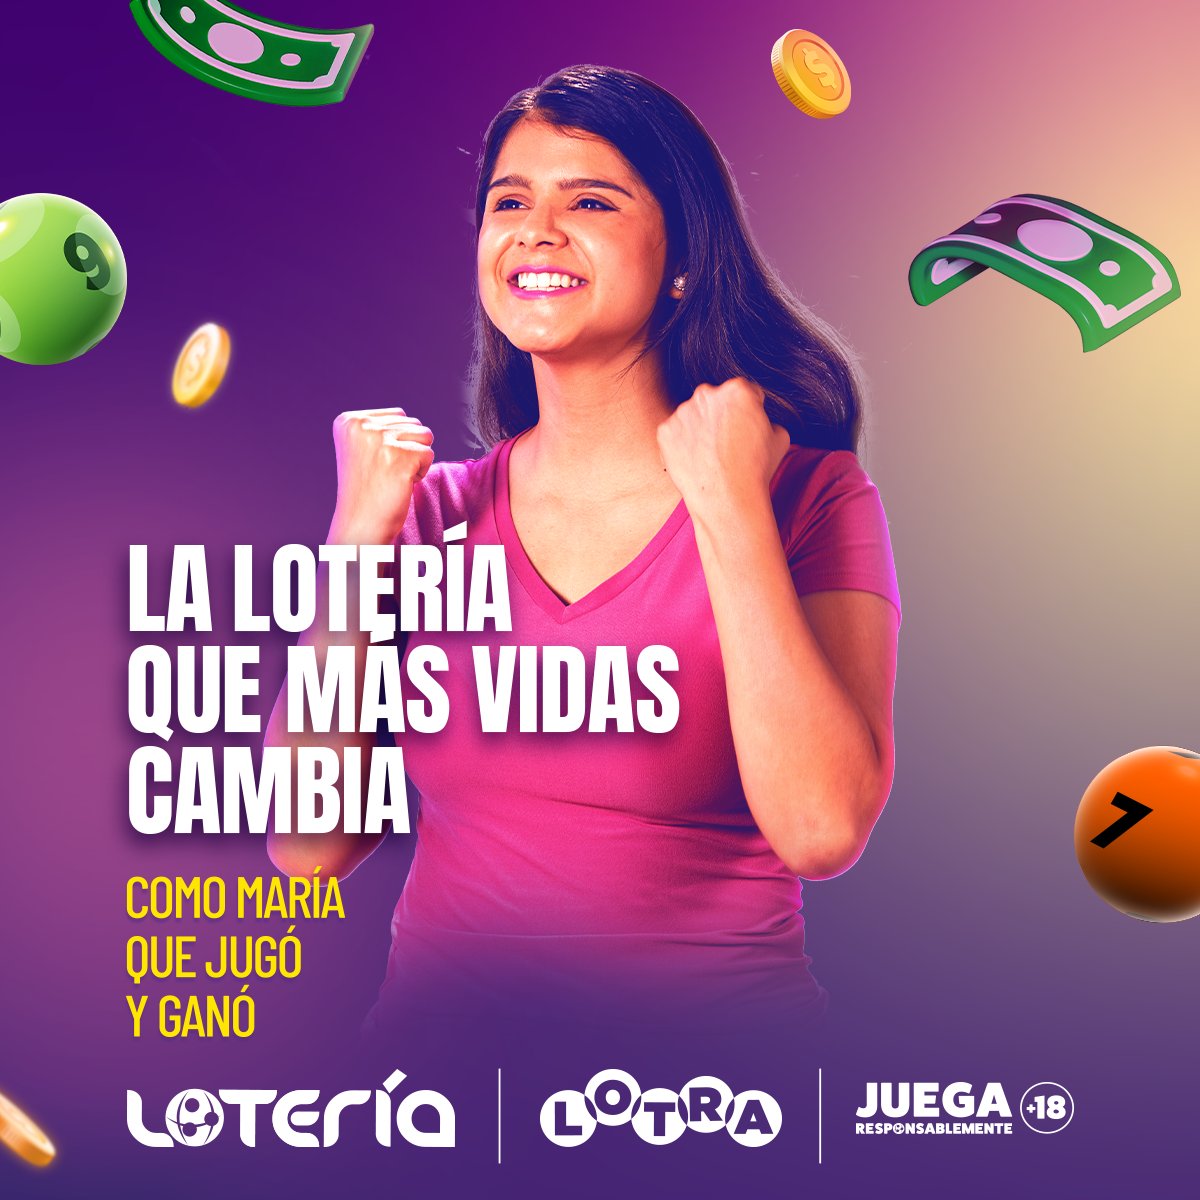 María jugó y ganó 🤩 y cambió su vida con LOTRA.
¡Anímate tú también a jugar y a ganar! 😉
Lotería #LaQueMásVidasCambia #JuegaResponsablemente 🥳